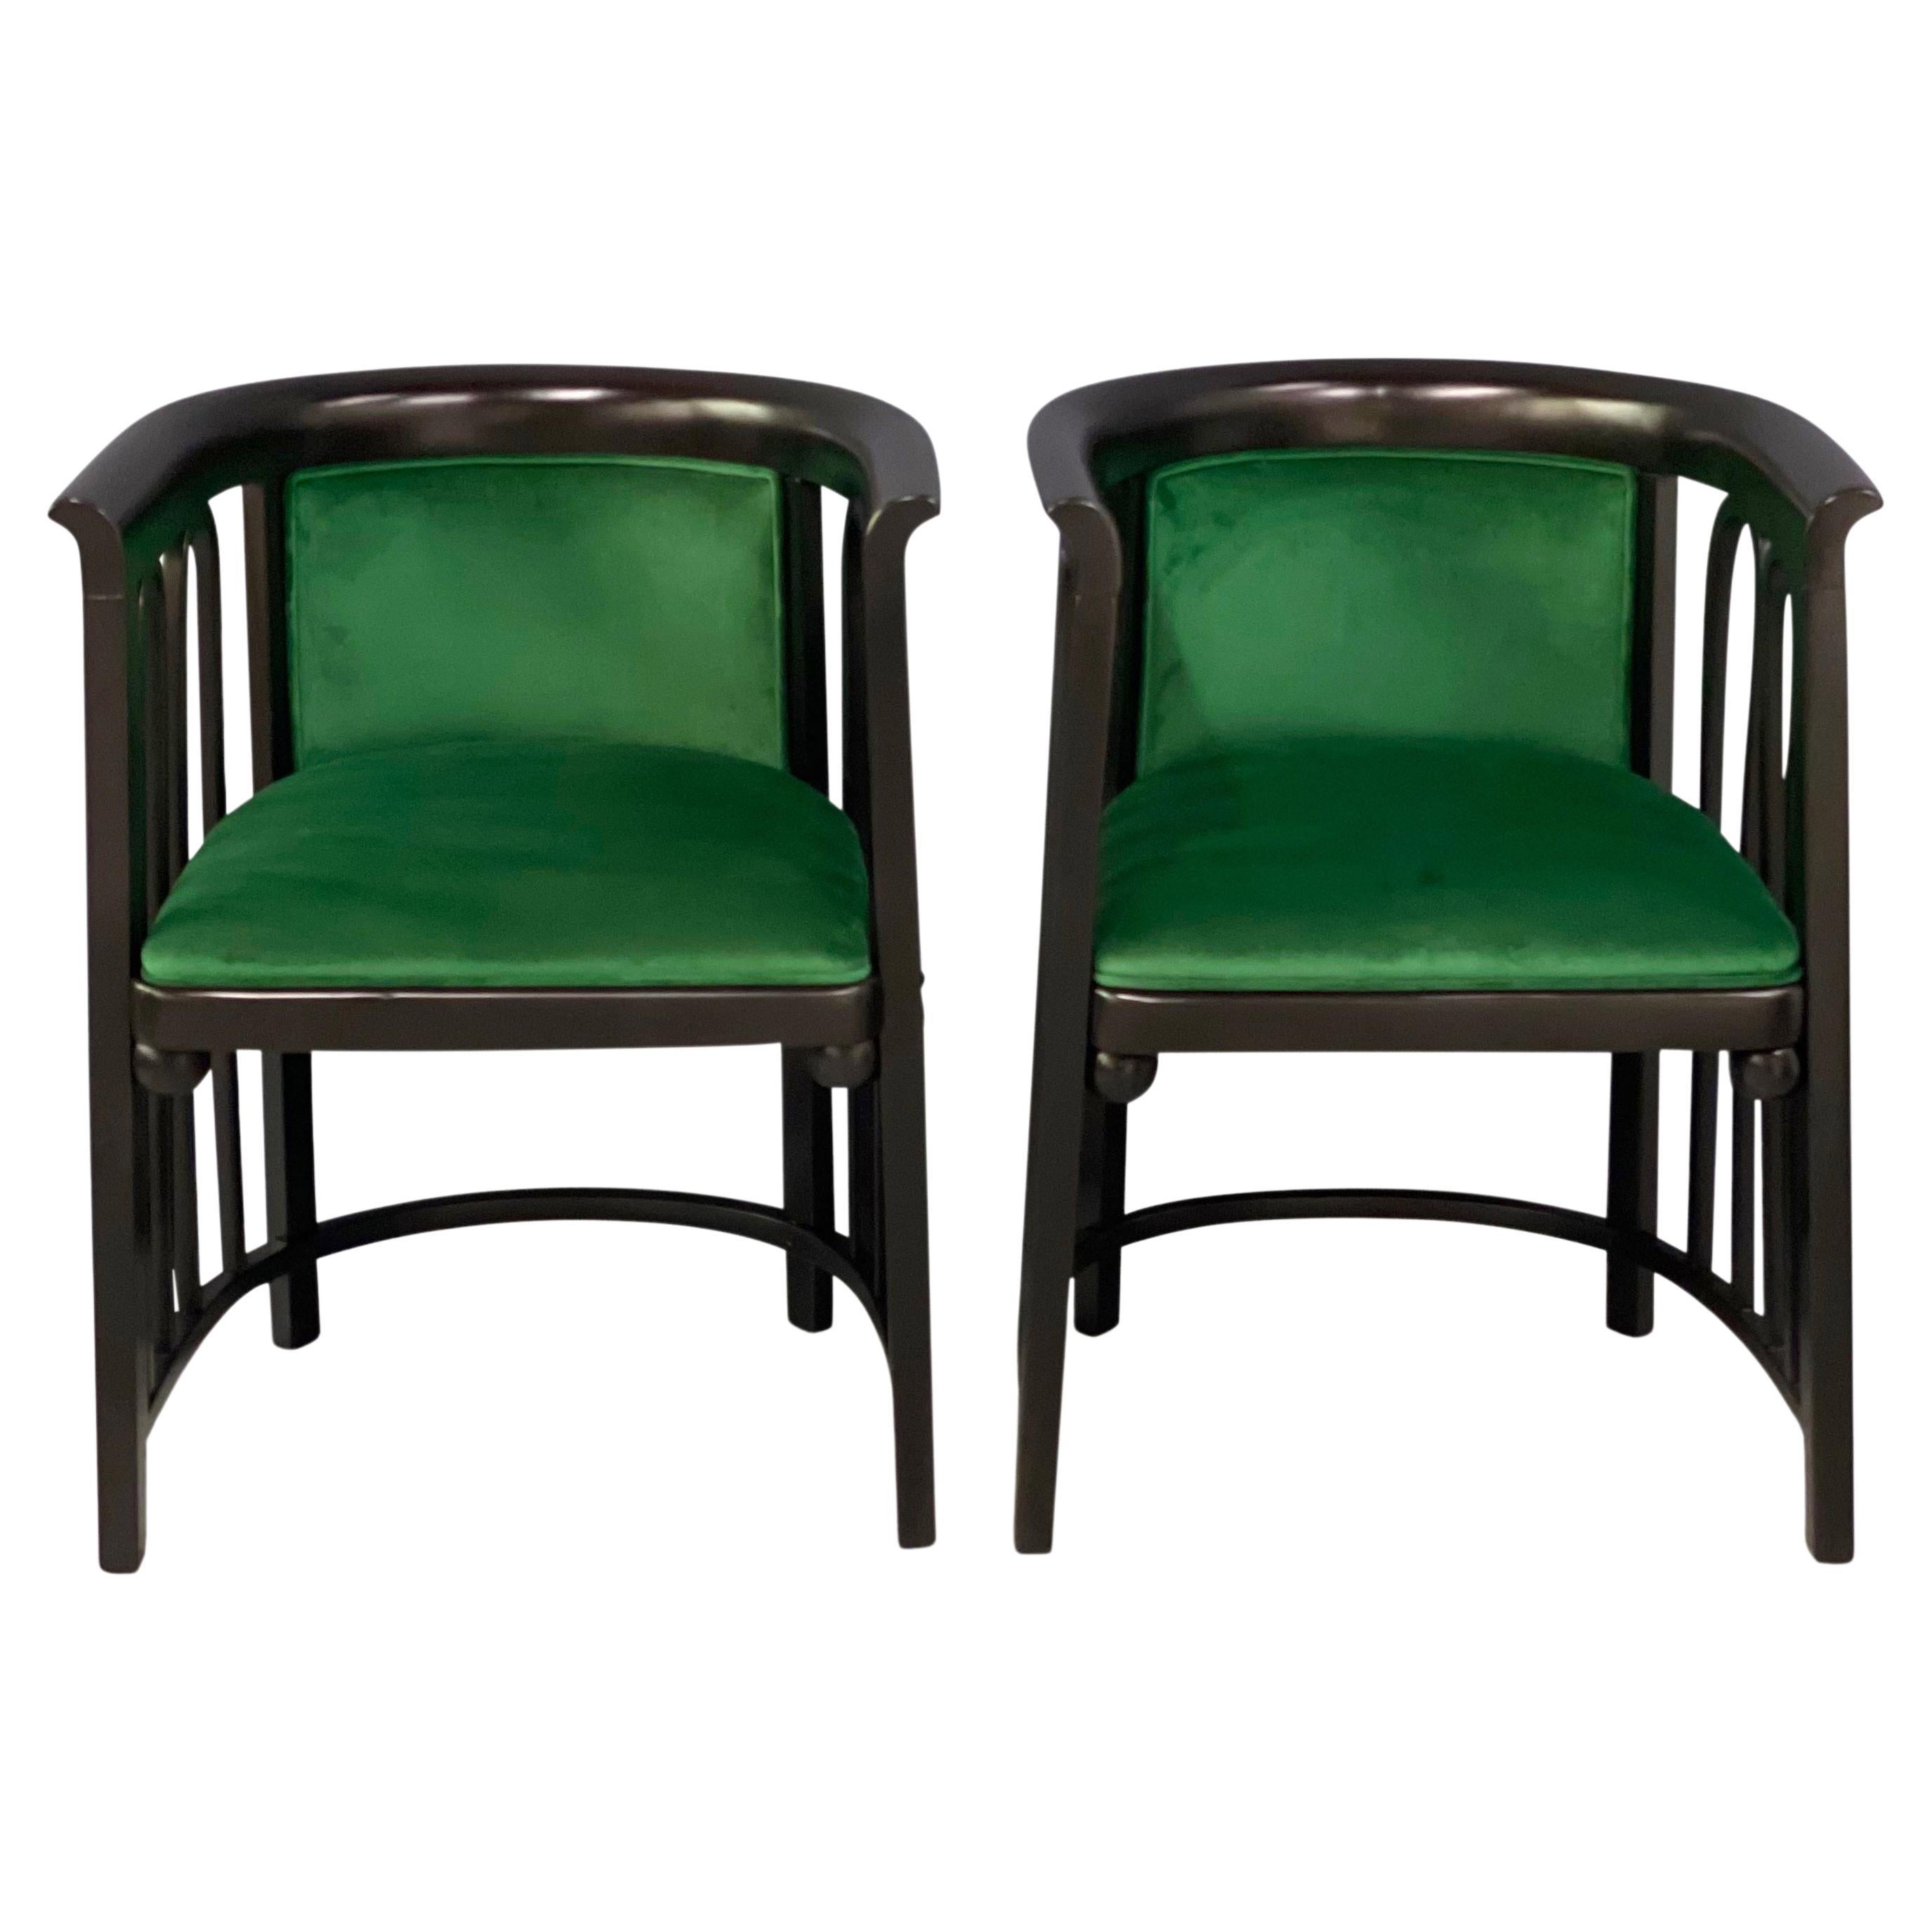 Ces chaises longues du début des années 1900 présentent un design inhabituel en bois courbé qui les rend extrêmement rares. Ils ont été retapissés dans un magnifique velours vert émeraude et les cadres ont été remis à neuf dans une finition noire